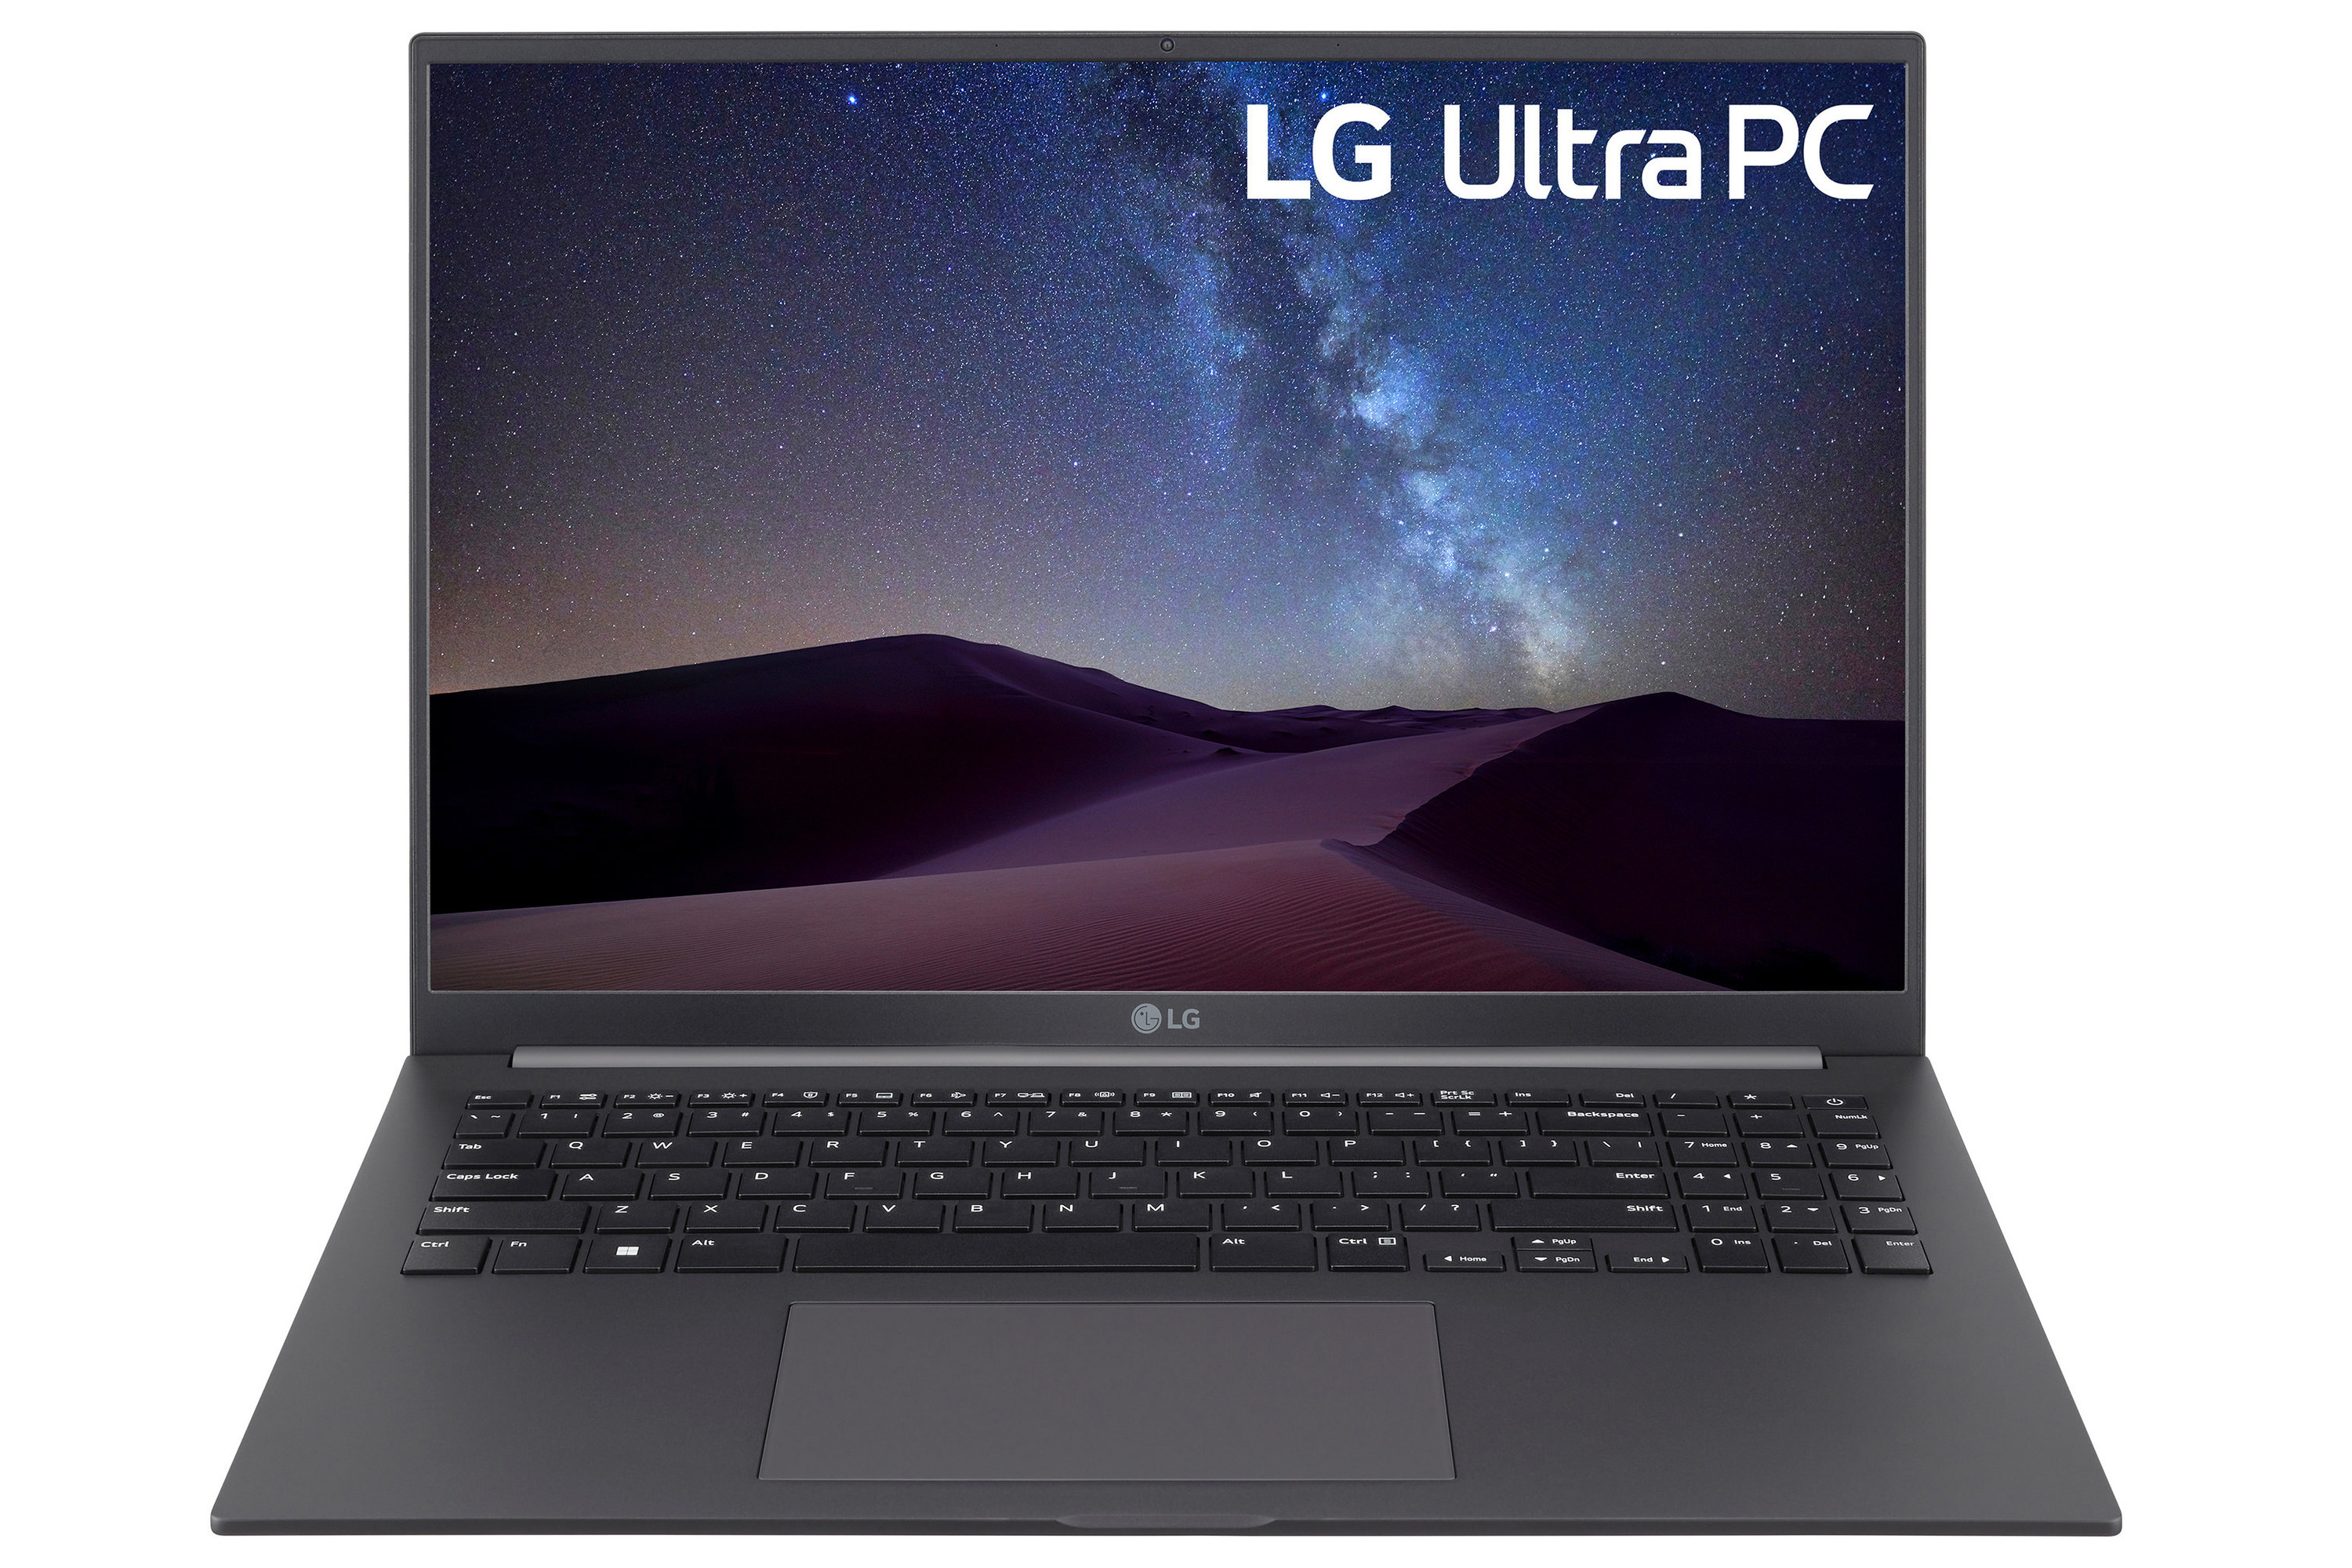 لپ تاپ ال جی اولترا پی سی LG Ultra PC از نمای جلو